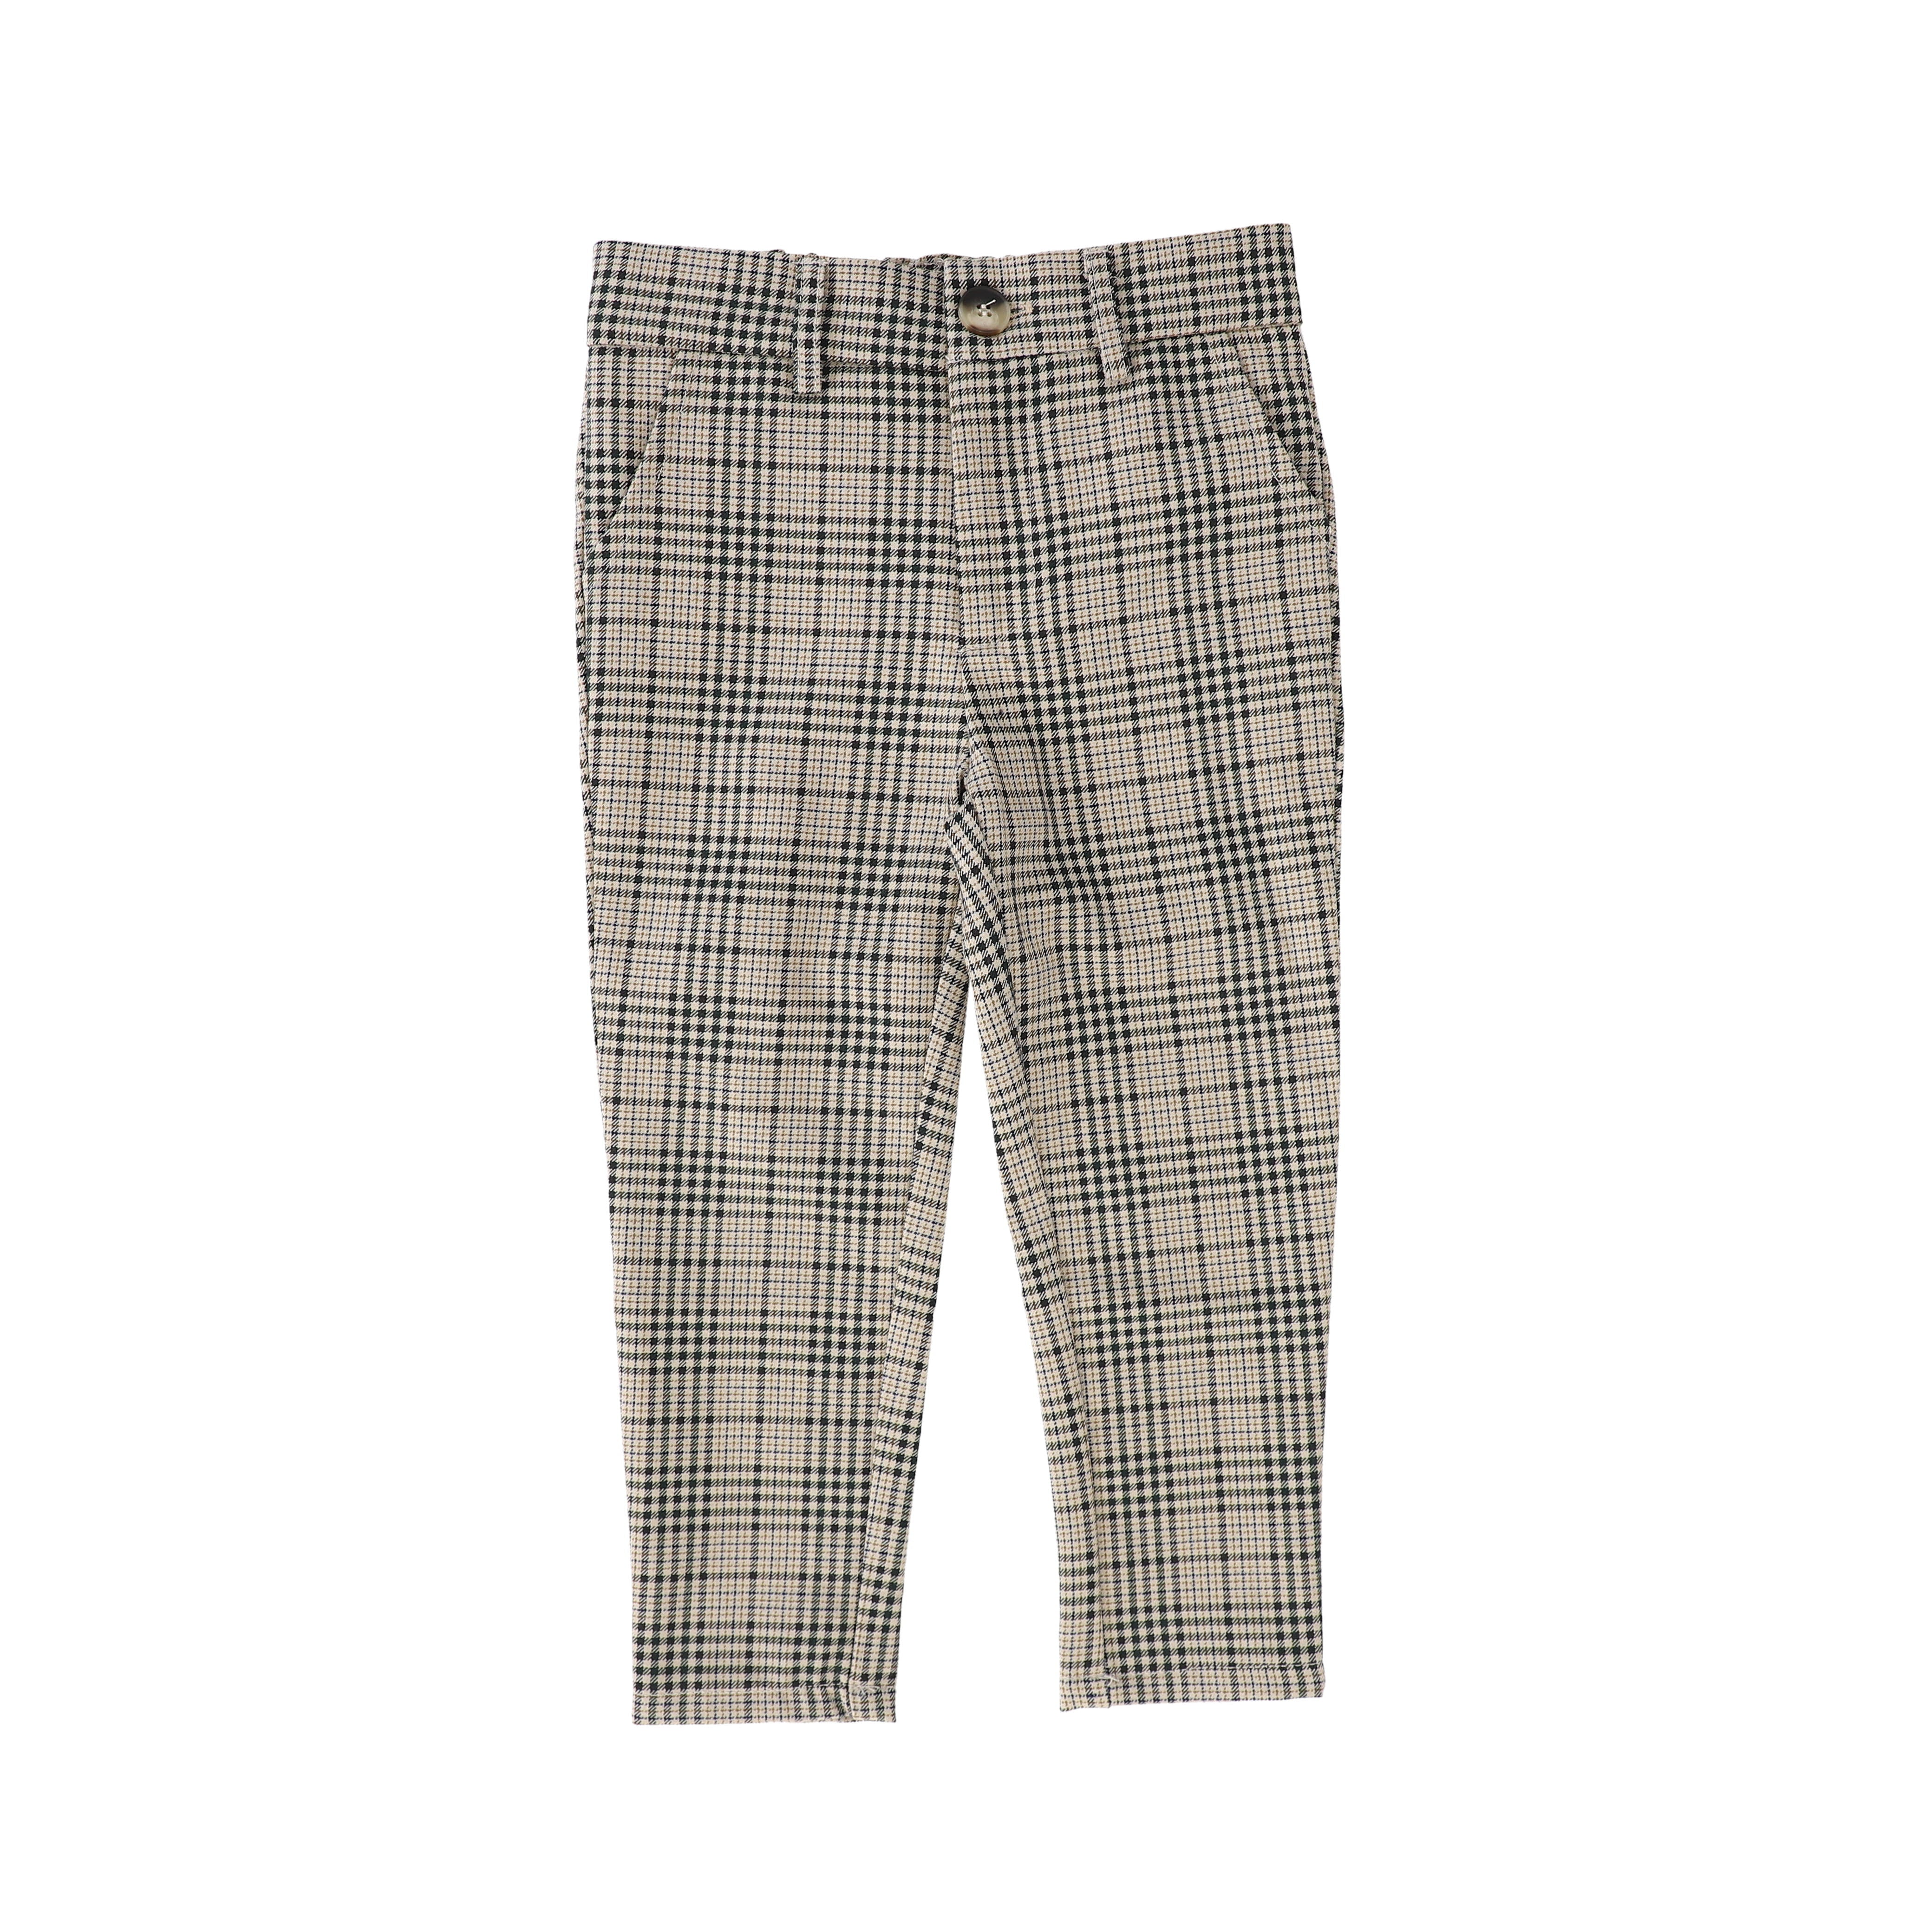 Mini Boden Kids' Pleated Smart Trouser Blue / Green Check Boys Boden |  ModeSens